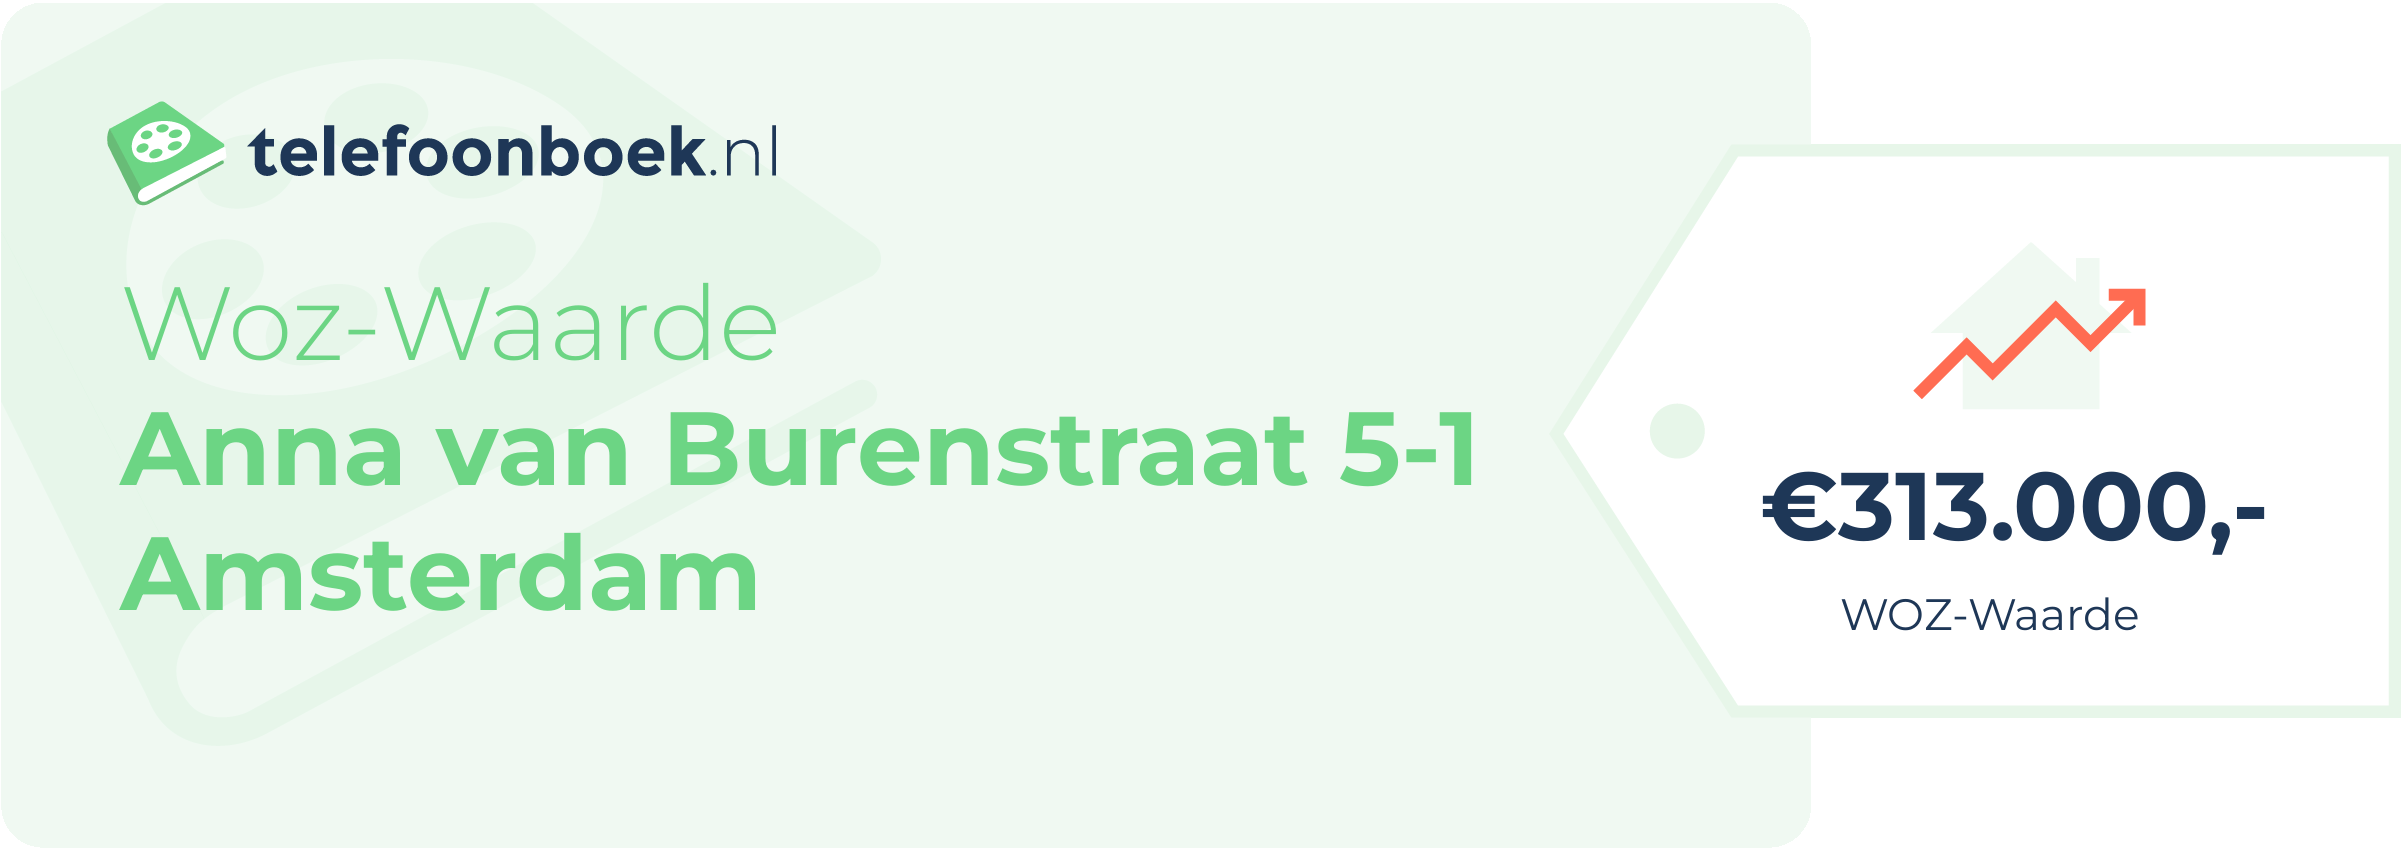 WOZ-waarde Anna Van Burenstraat 5-1 Amsterdam